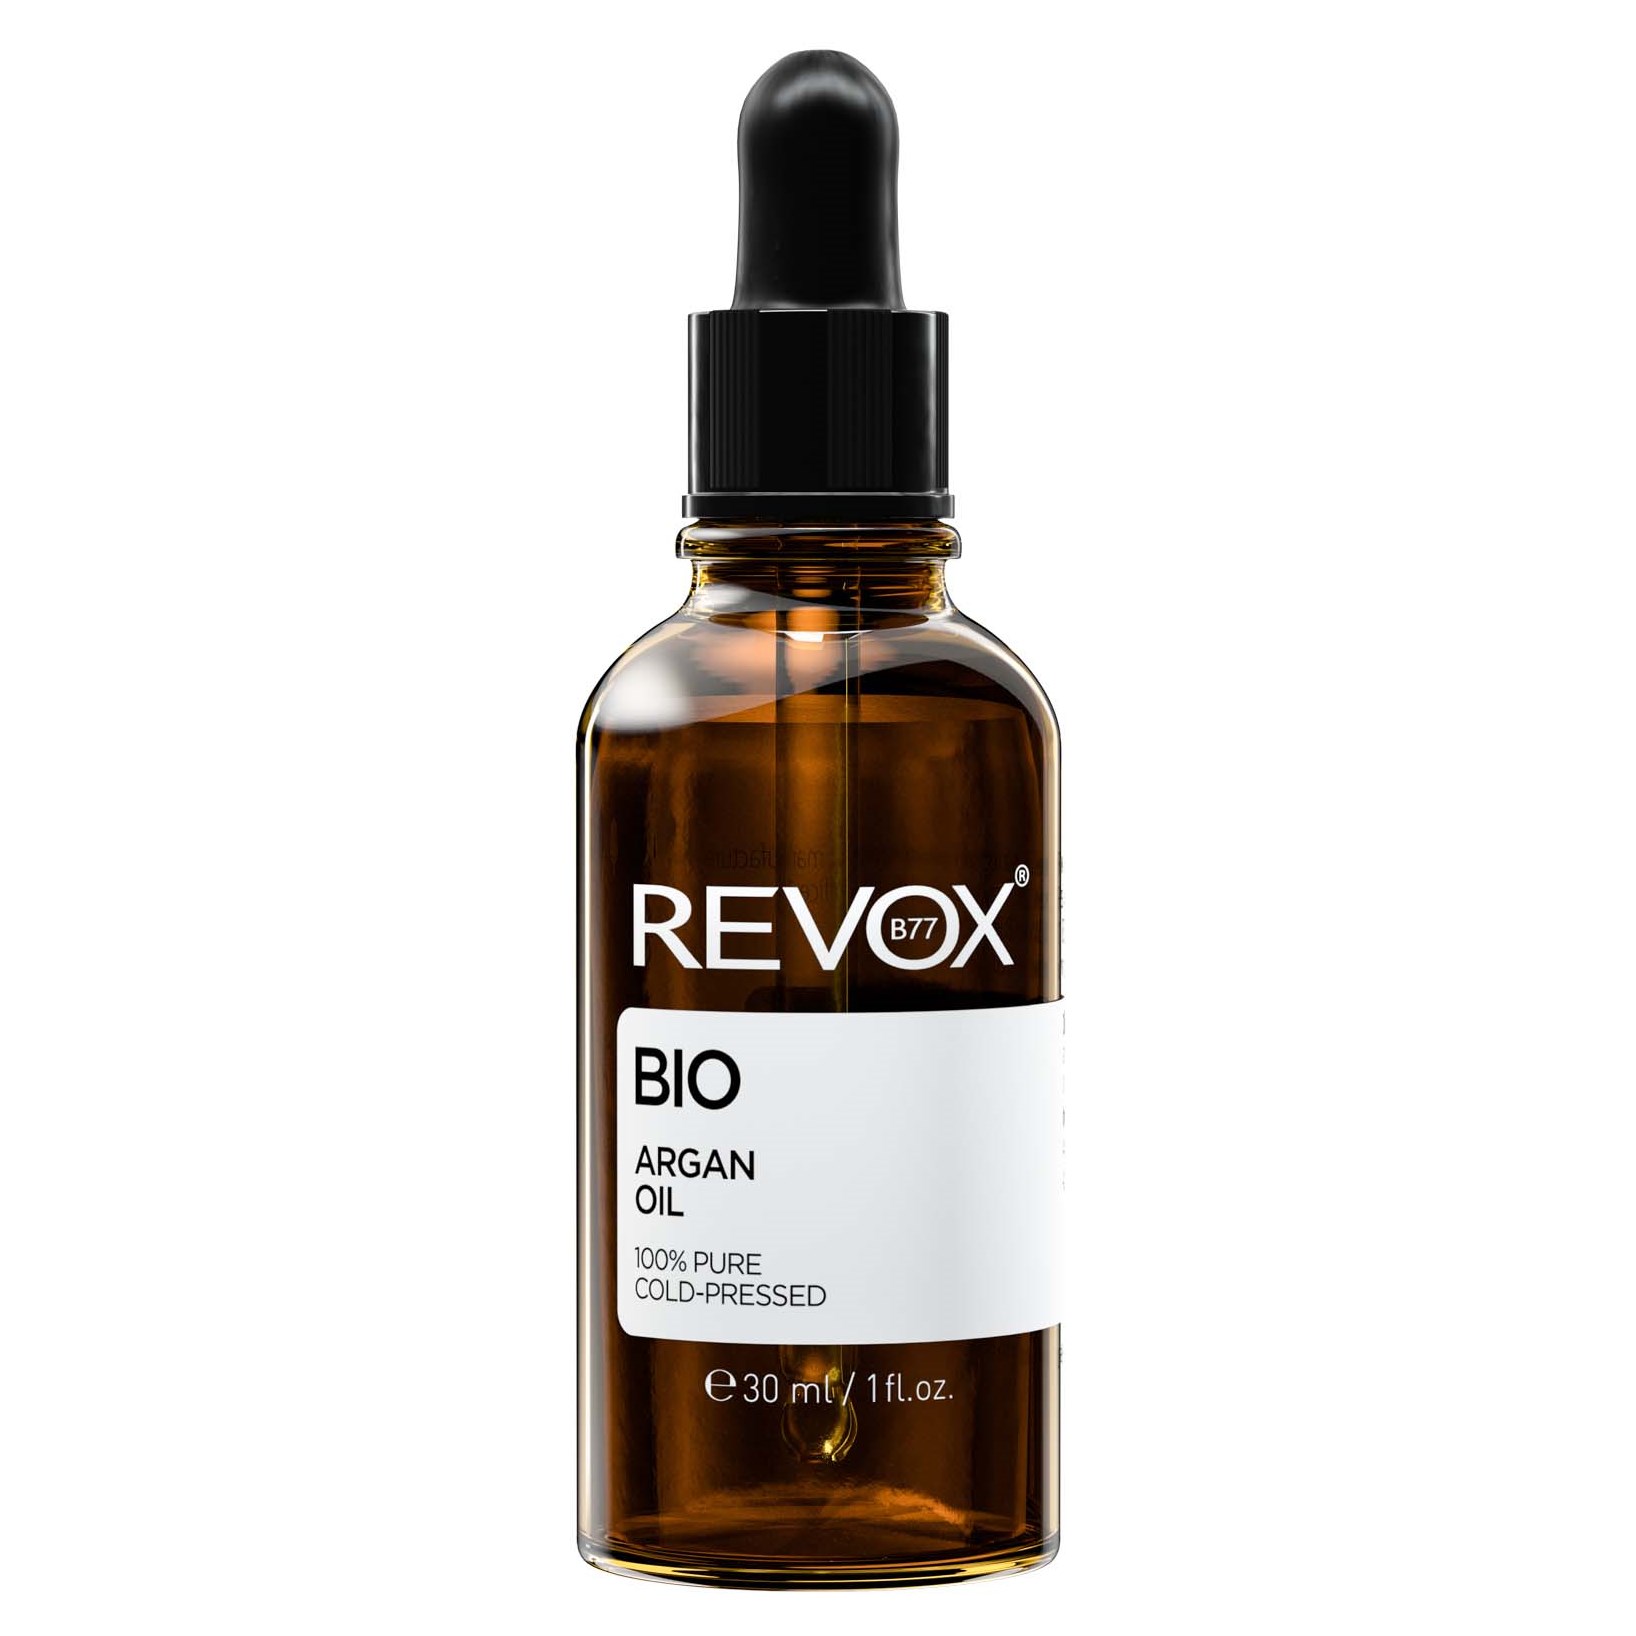 Revox JUST REVOX B77 Bio Argan Oil 100% Pure 30 ml